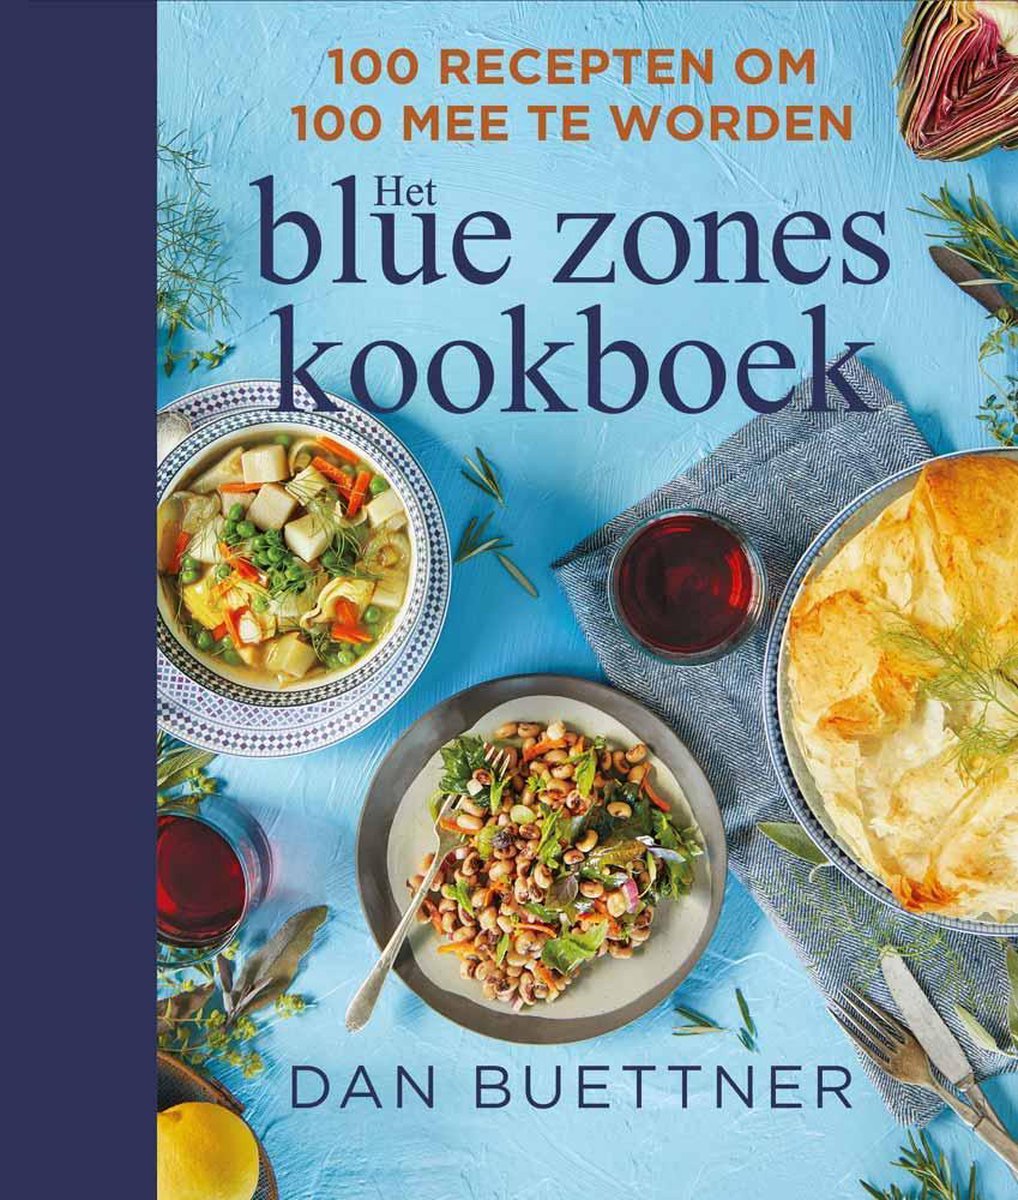 Blue zones kookboek - Dan Buettner